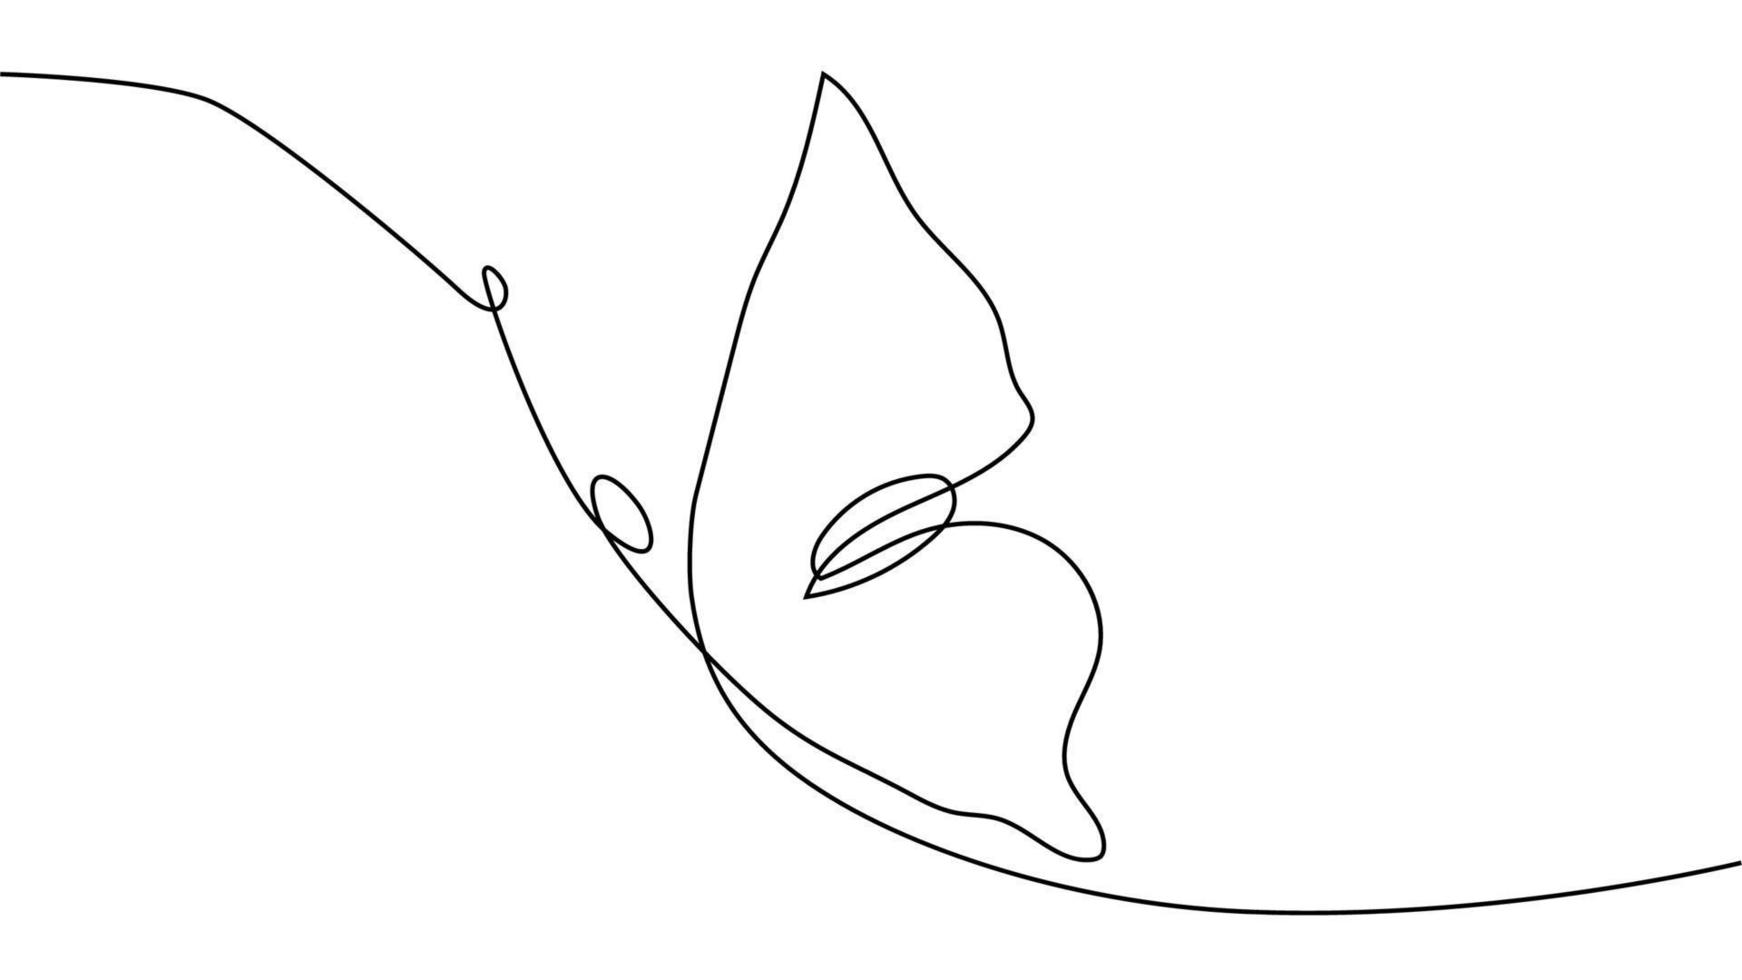 dessin continu d'une ligne. logo papillon volant. illustration en noir et blanc. concept pour logo, carte, bannière vecteur